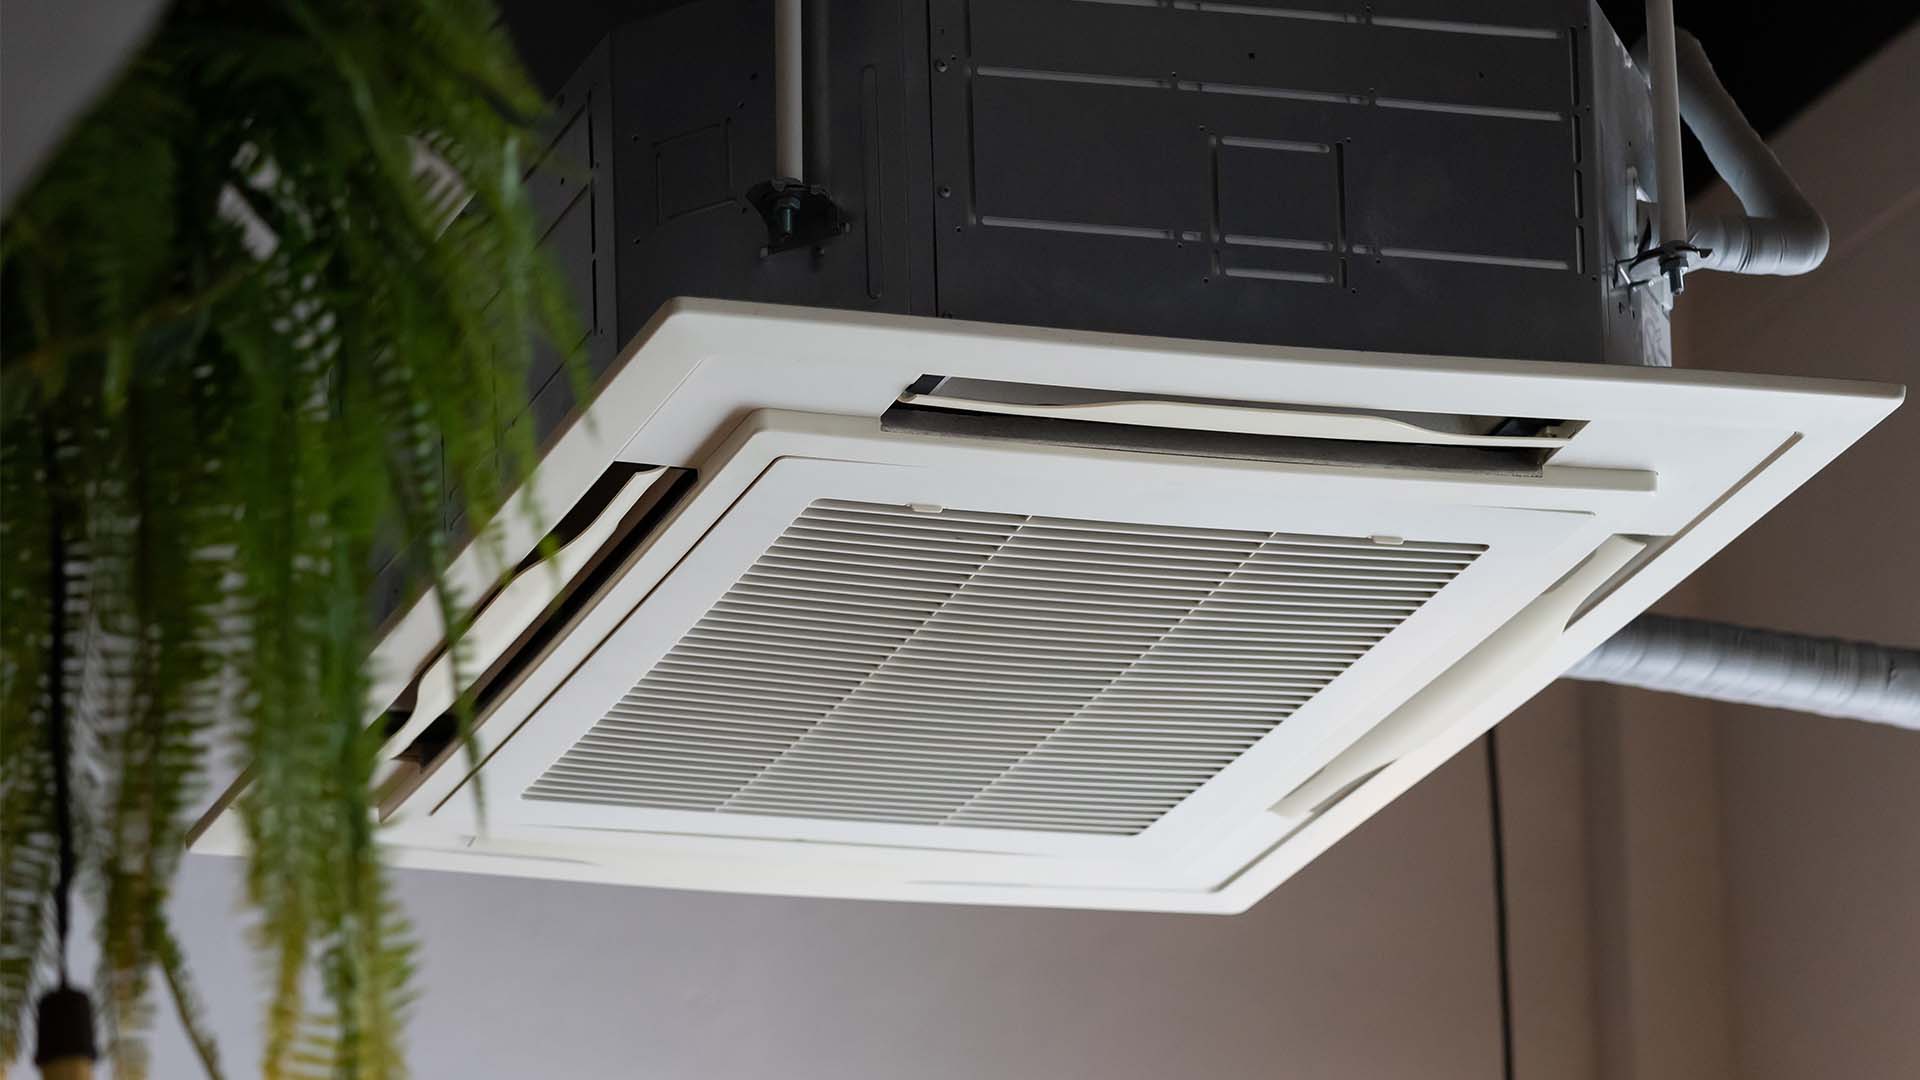 Indoor air ventilation intake